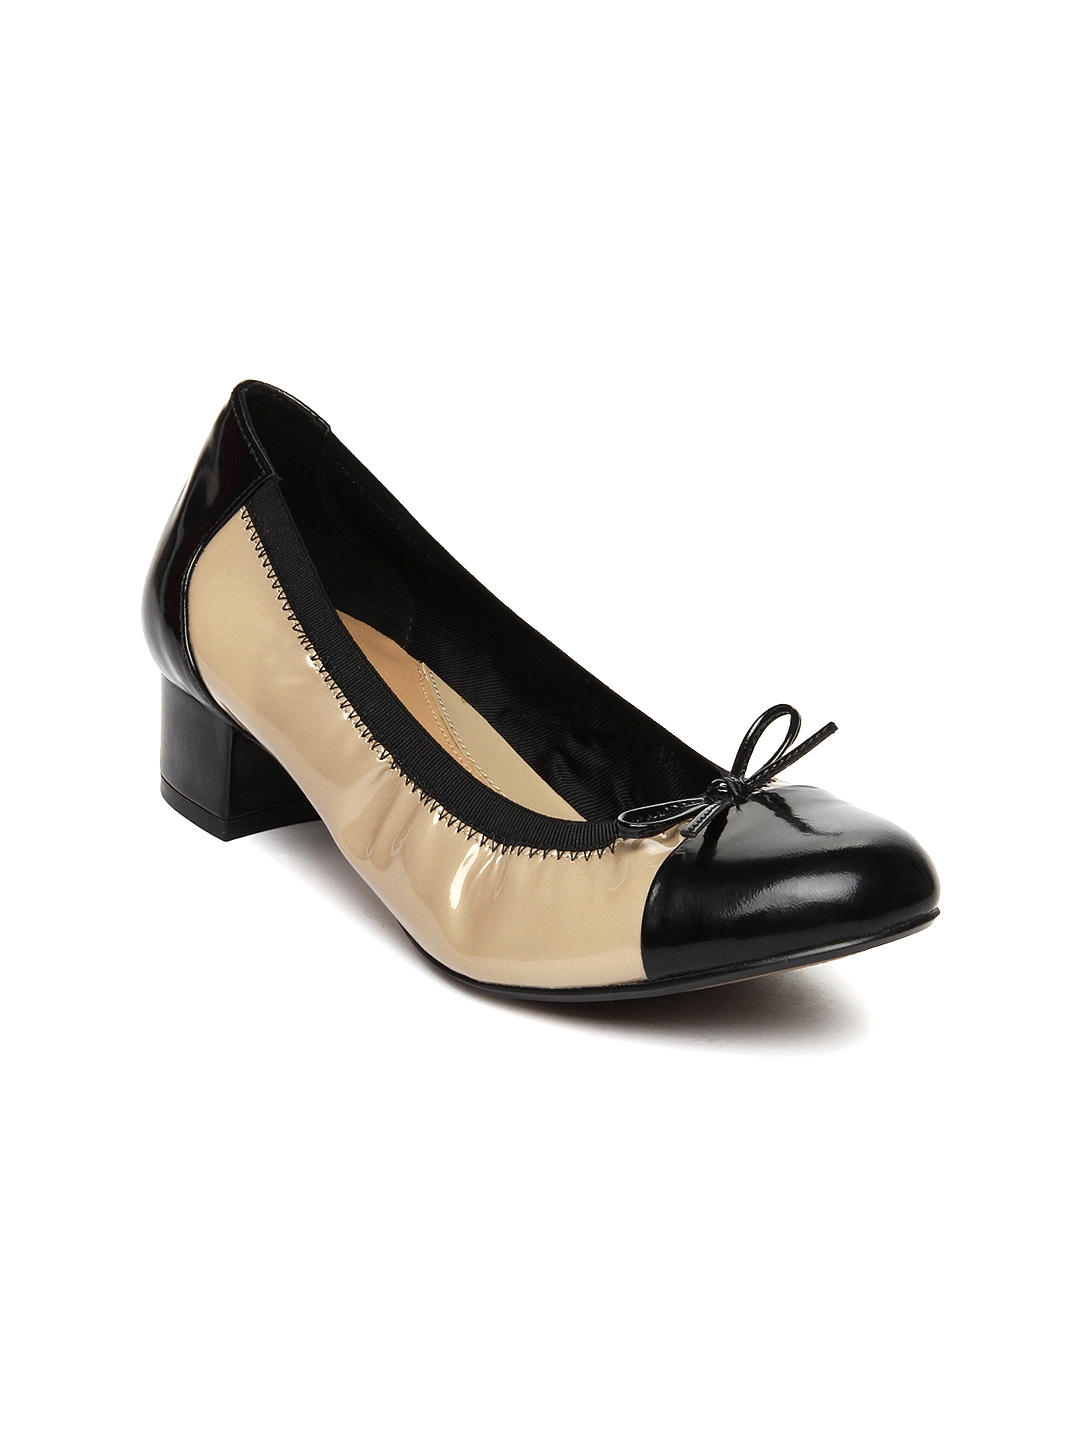 Buy Clarks Women Black & Brown Leather Heels - Heels for Women 382743 ...